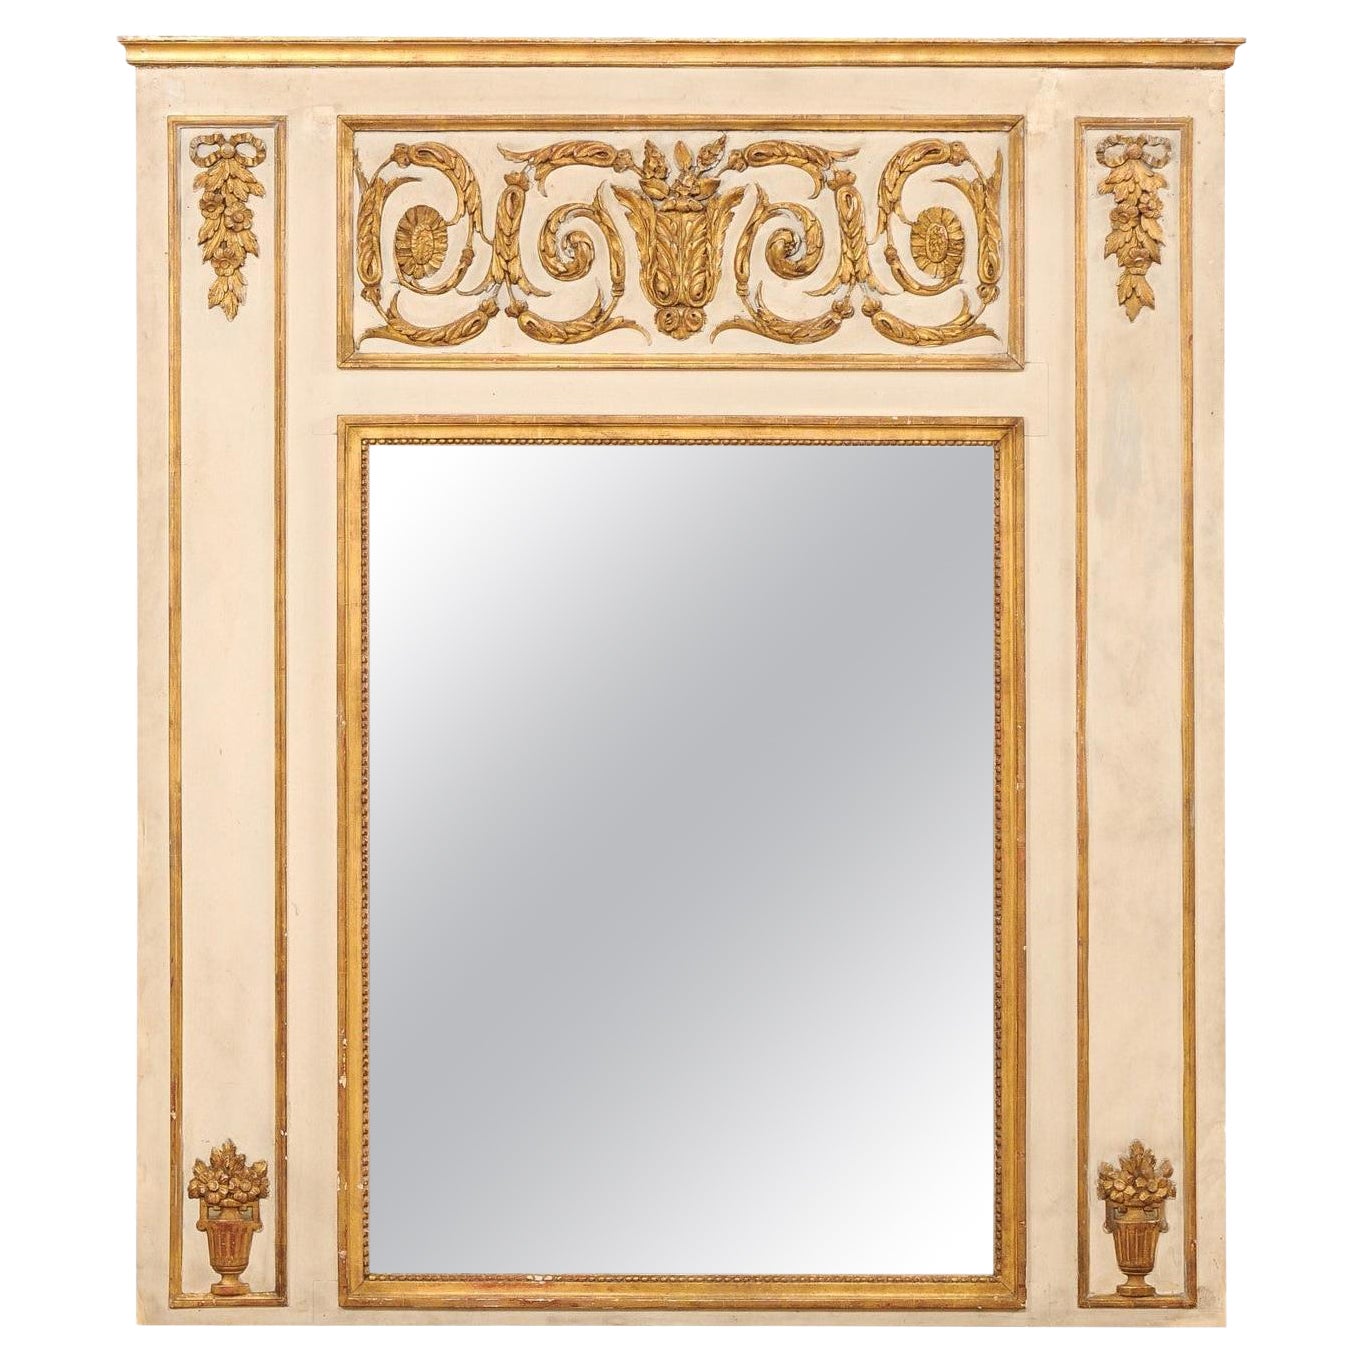 Miroir trumeau néoclassique français de grande taille avec accents dorés